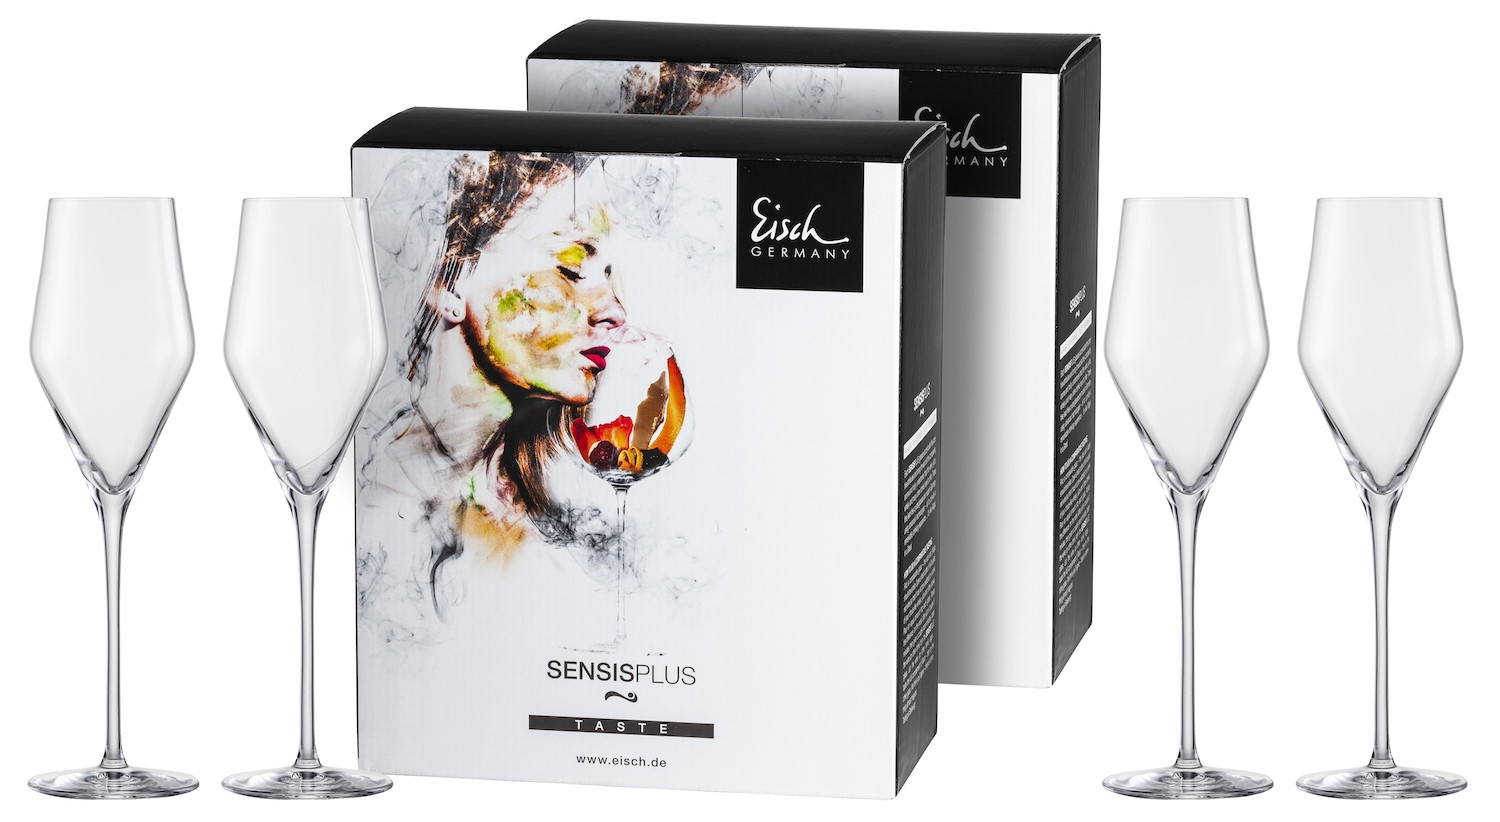 EISCH Champagnerglas Sky SENSISPLUS - 4 Stück im Geschenkkarton